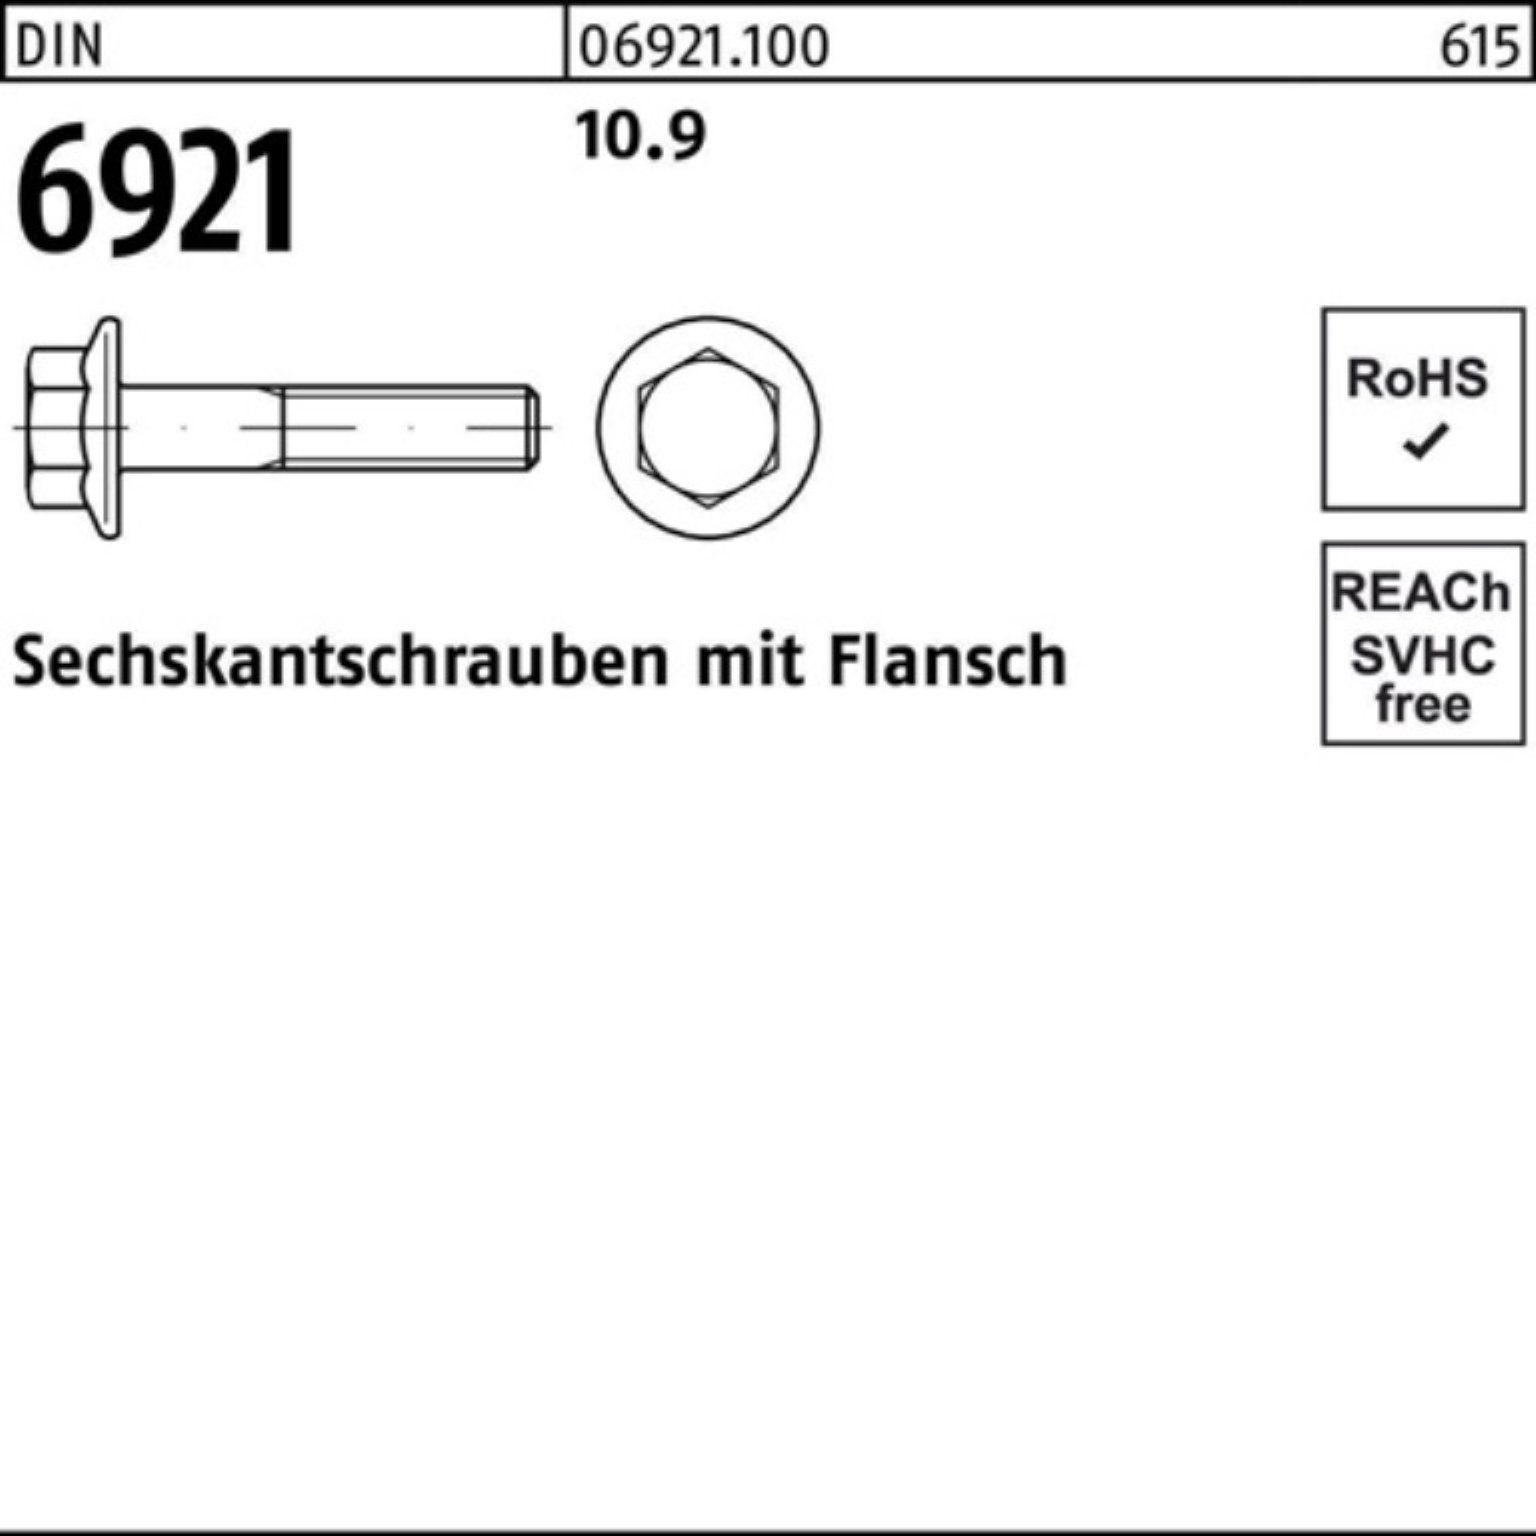 Reyher Sechskantschraube 500er Sechskantschraube M5x 6921 Pack D Flansch 500 20 DIN Stück 10.9